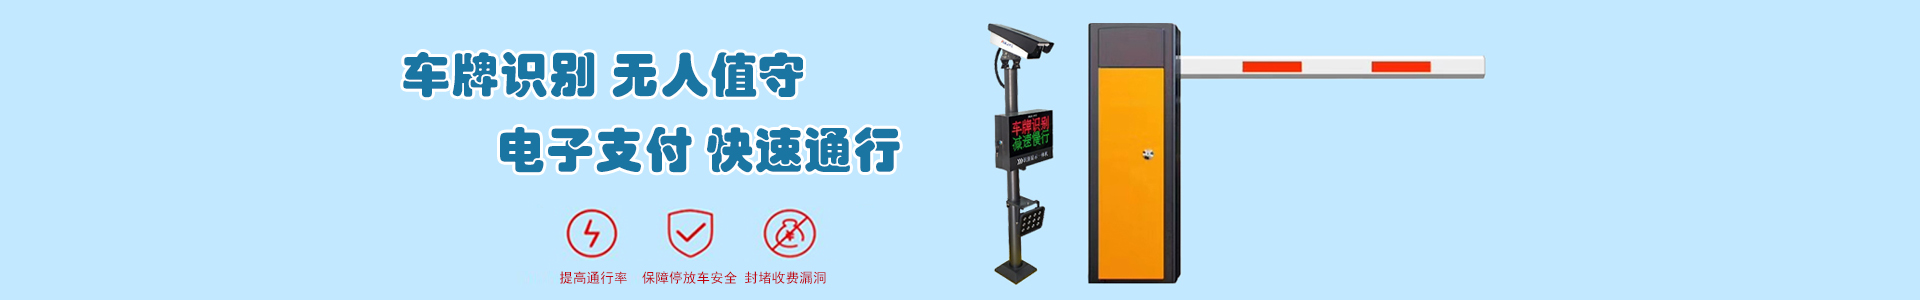 监控4-监控系统-上海帆蓝智能科技有限公司-车辆车牌识别|监控摄像头|道闸|小区门禁|人脸识别|伸缩门|